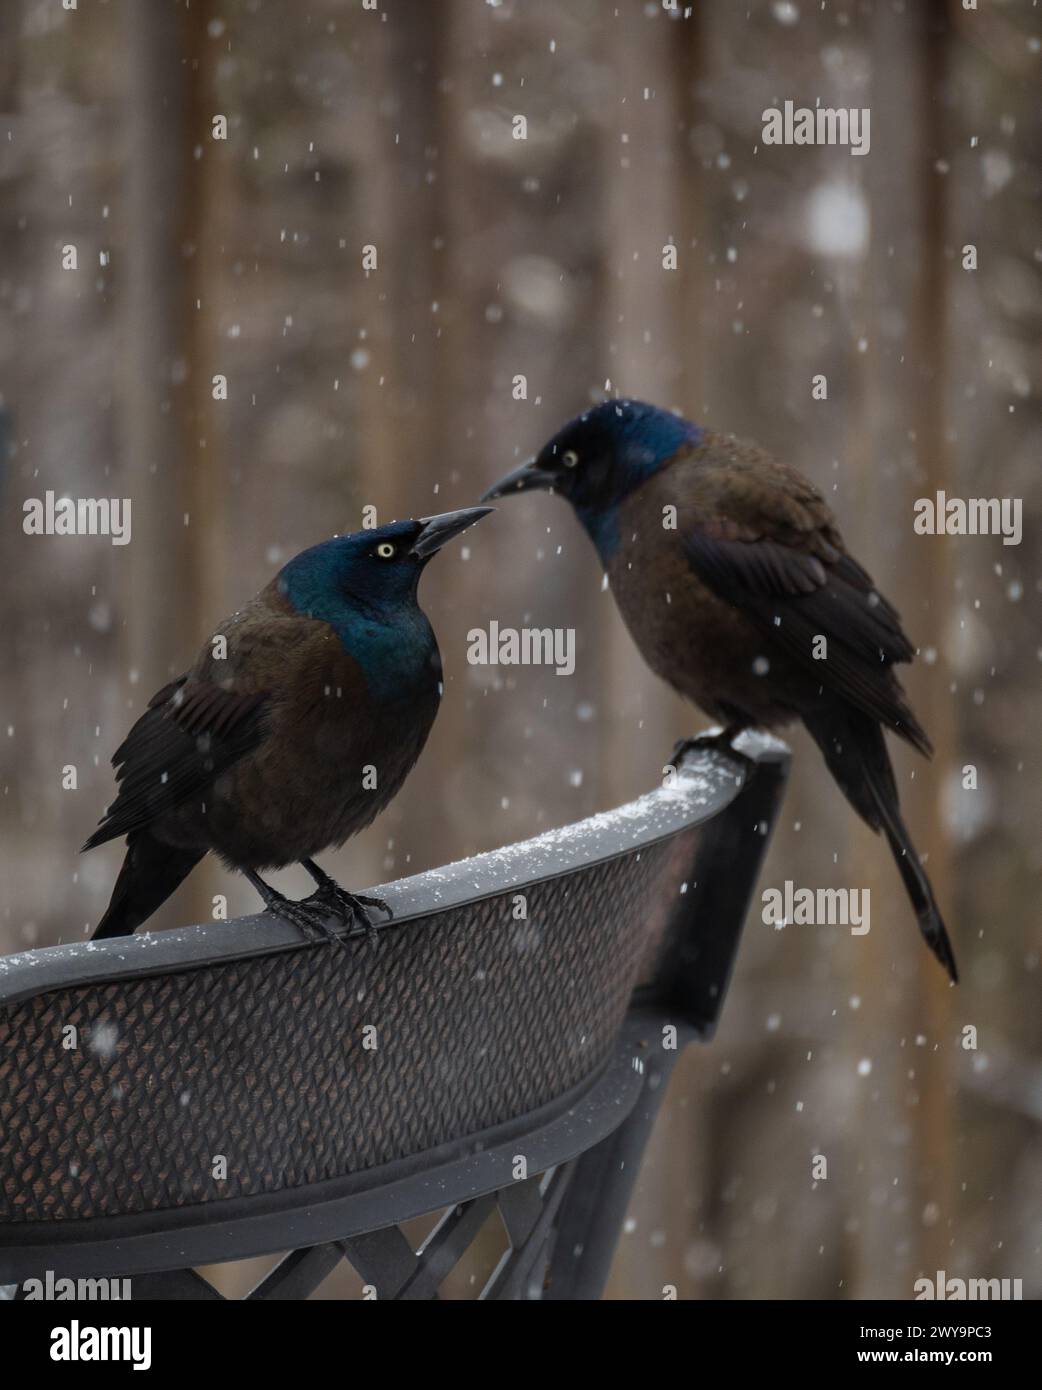 Oiseaux grackle communs perchés sur une chaise en métal un jour neigeux. Banque D'Images